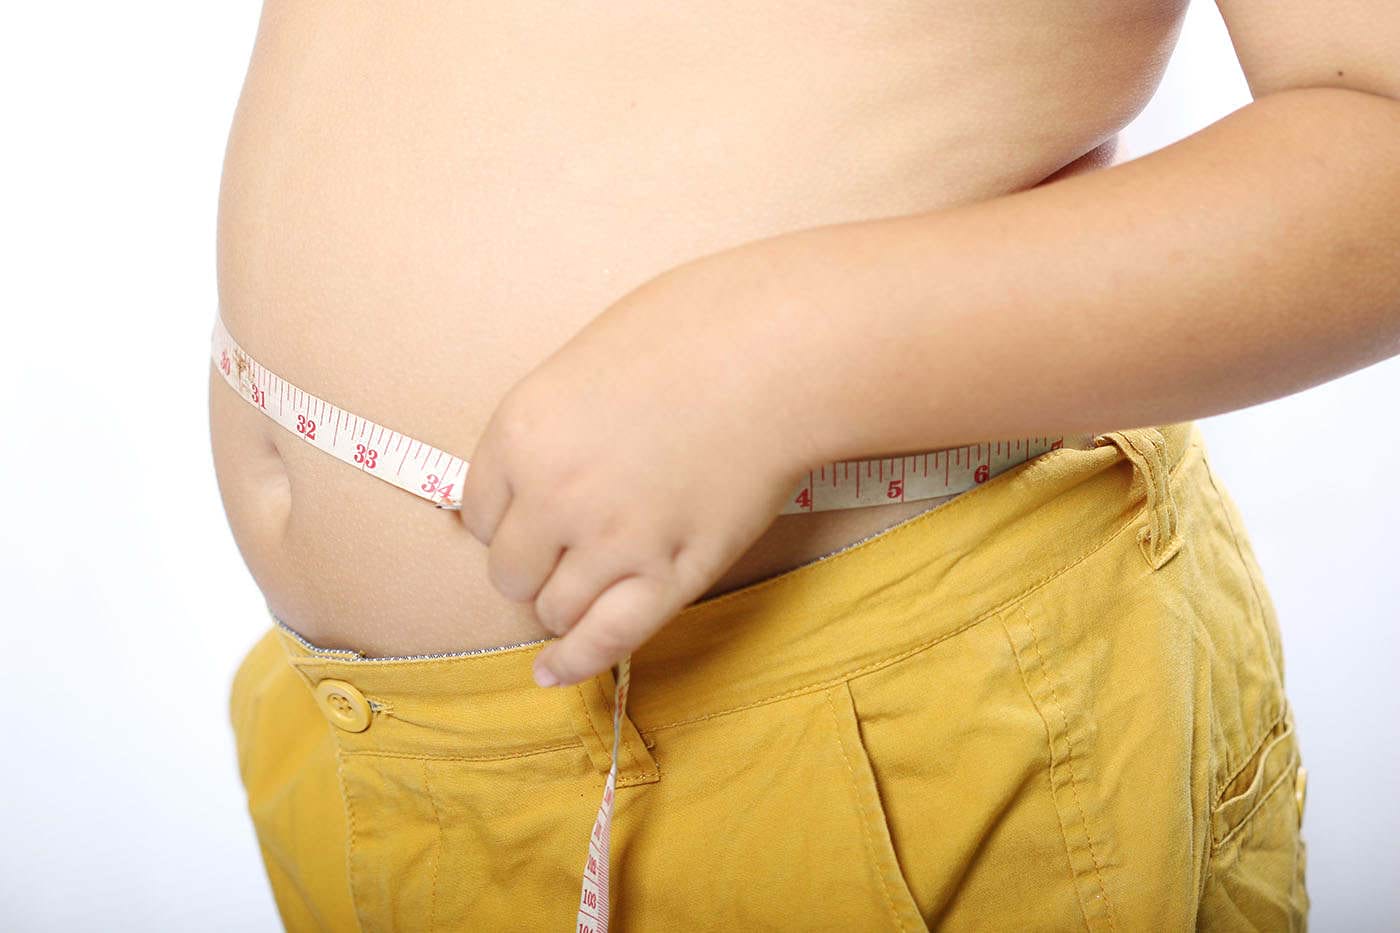 Obezitatea infantilă crește riscul de anxietate, depresie și moarte prematură [studiu]